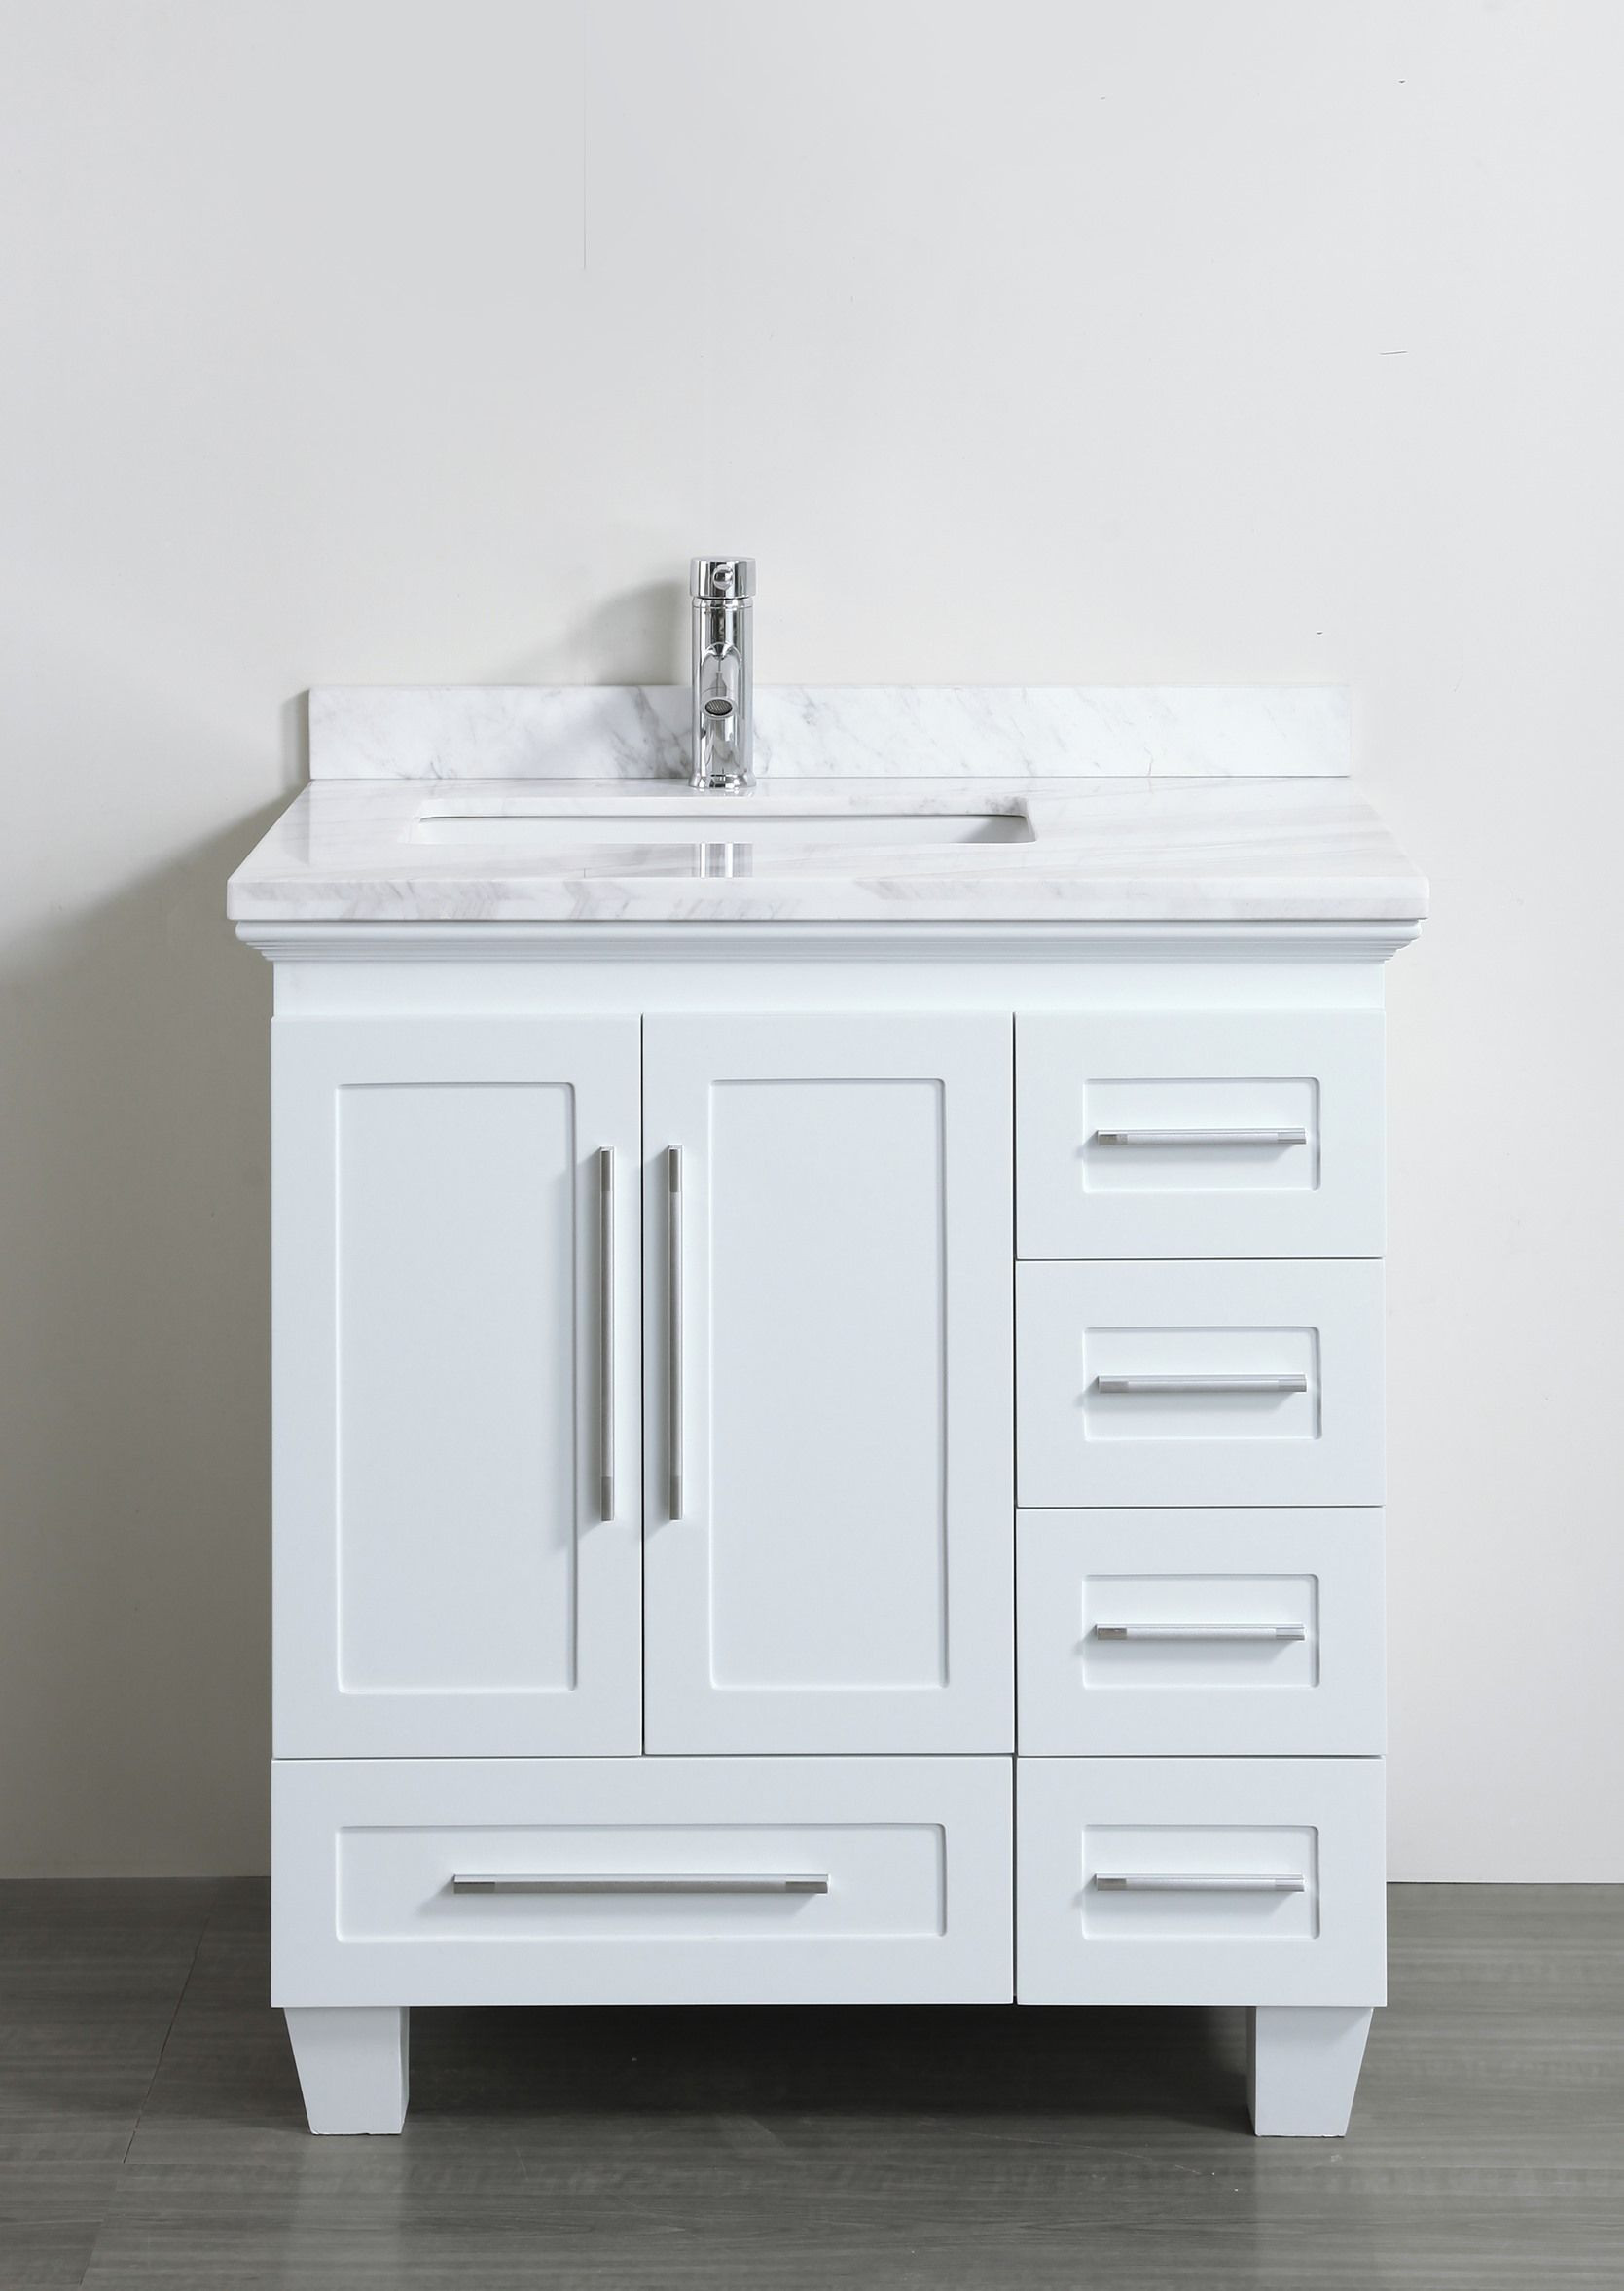 30 Inch Bathroom Vanity Cabinet
 Accanto Contemporary 30 inch White Finish Bathroom Vanity